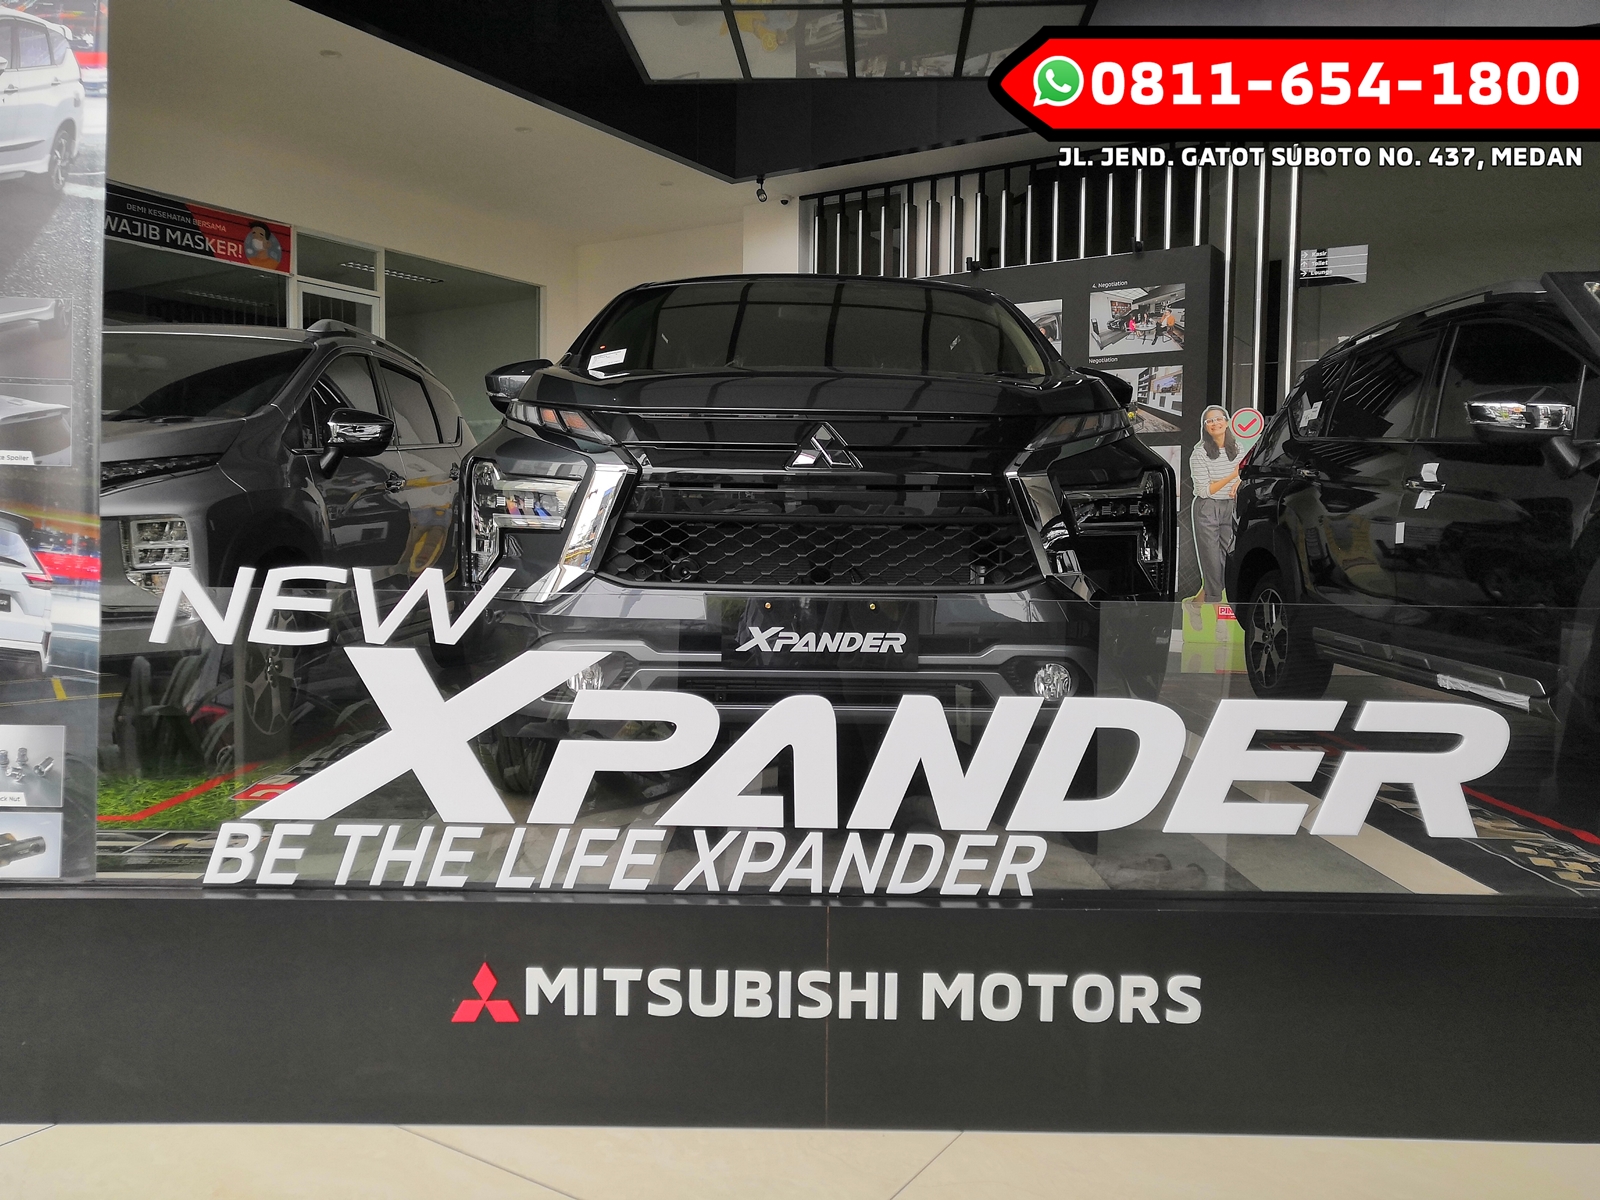 Promo, Simulasi Kredit dan Harga Mitsubishi New Xpander Kota Medan Maret 2022 